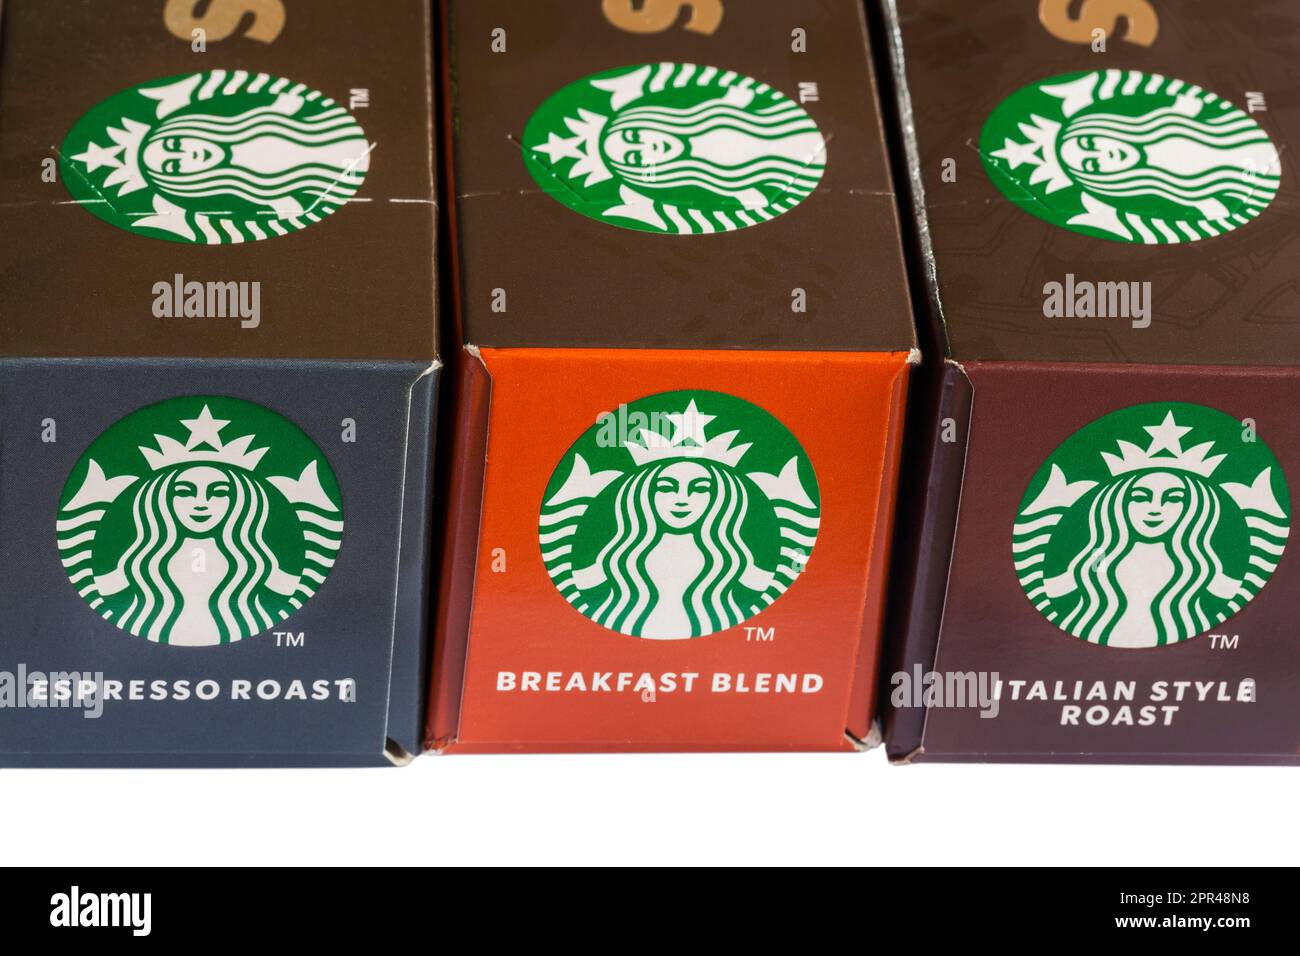 Starbucks Logo auf Kartons mit Starbucks Kaffeekapseln von Nespresso – Breakfast Blend, Espresso Roast, Italian Style Roast Stockfoto